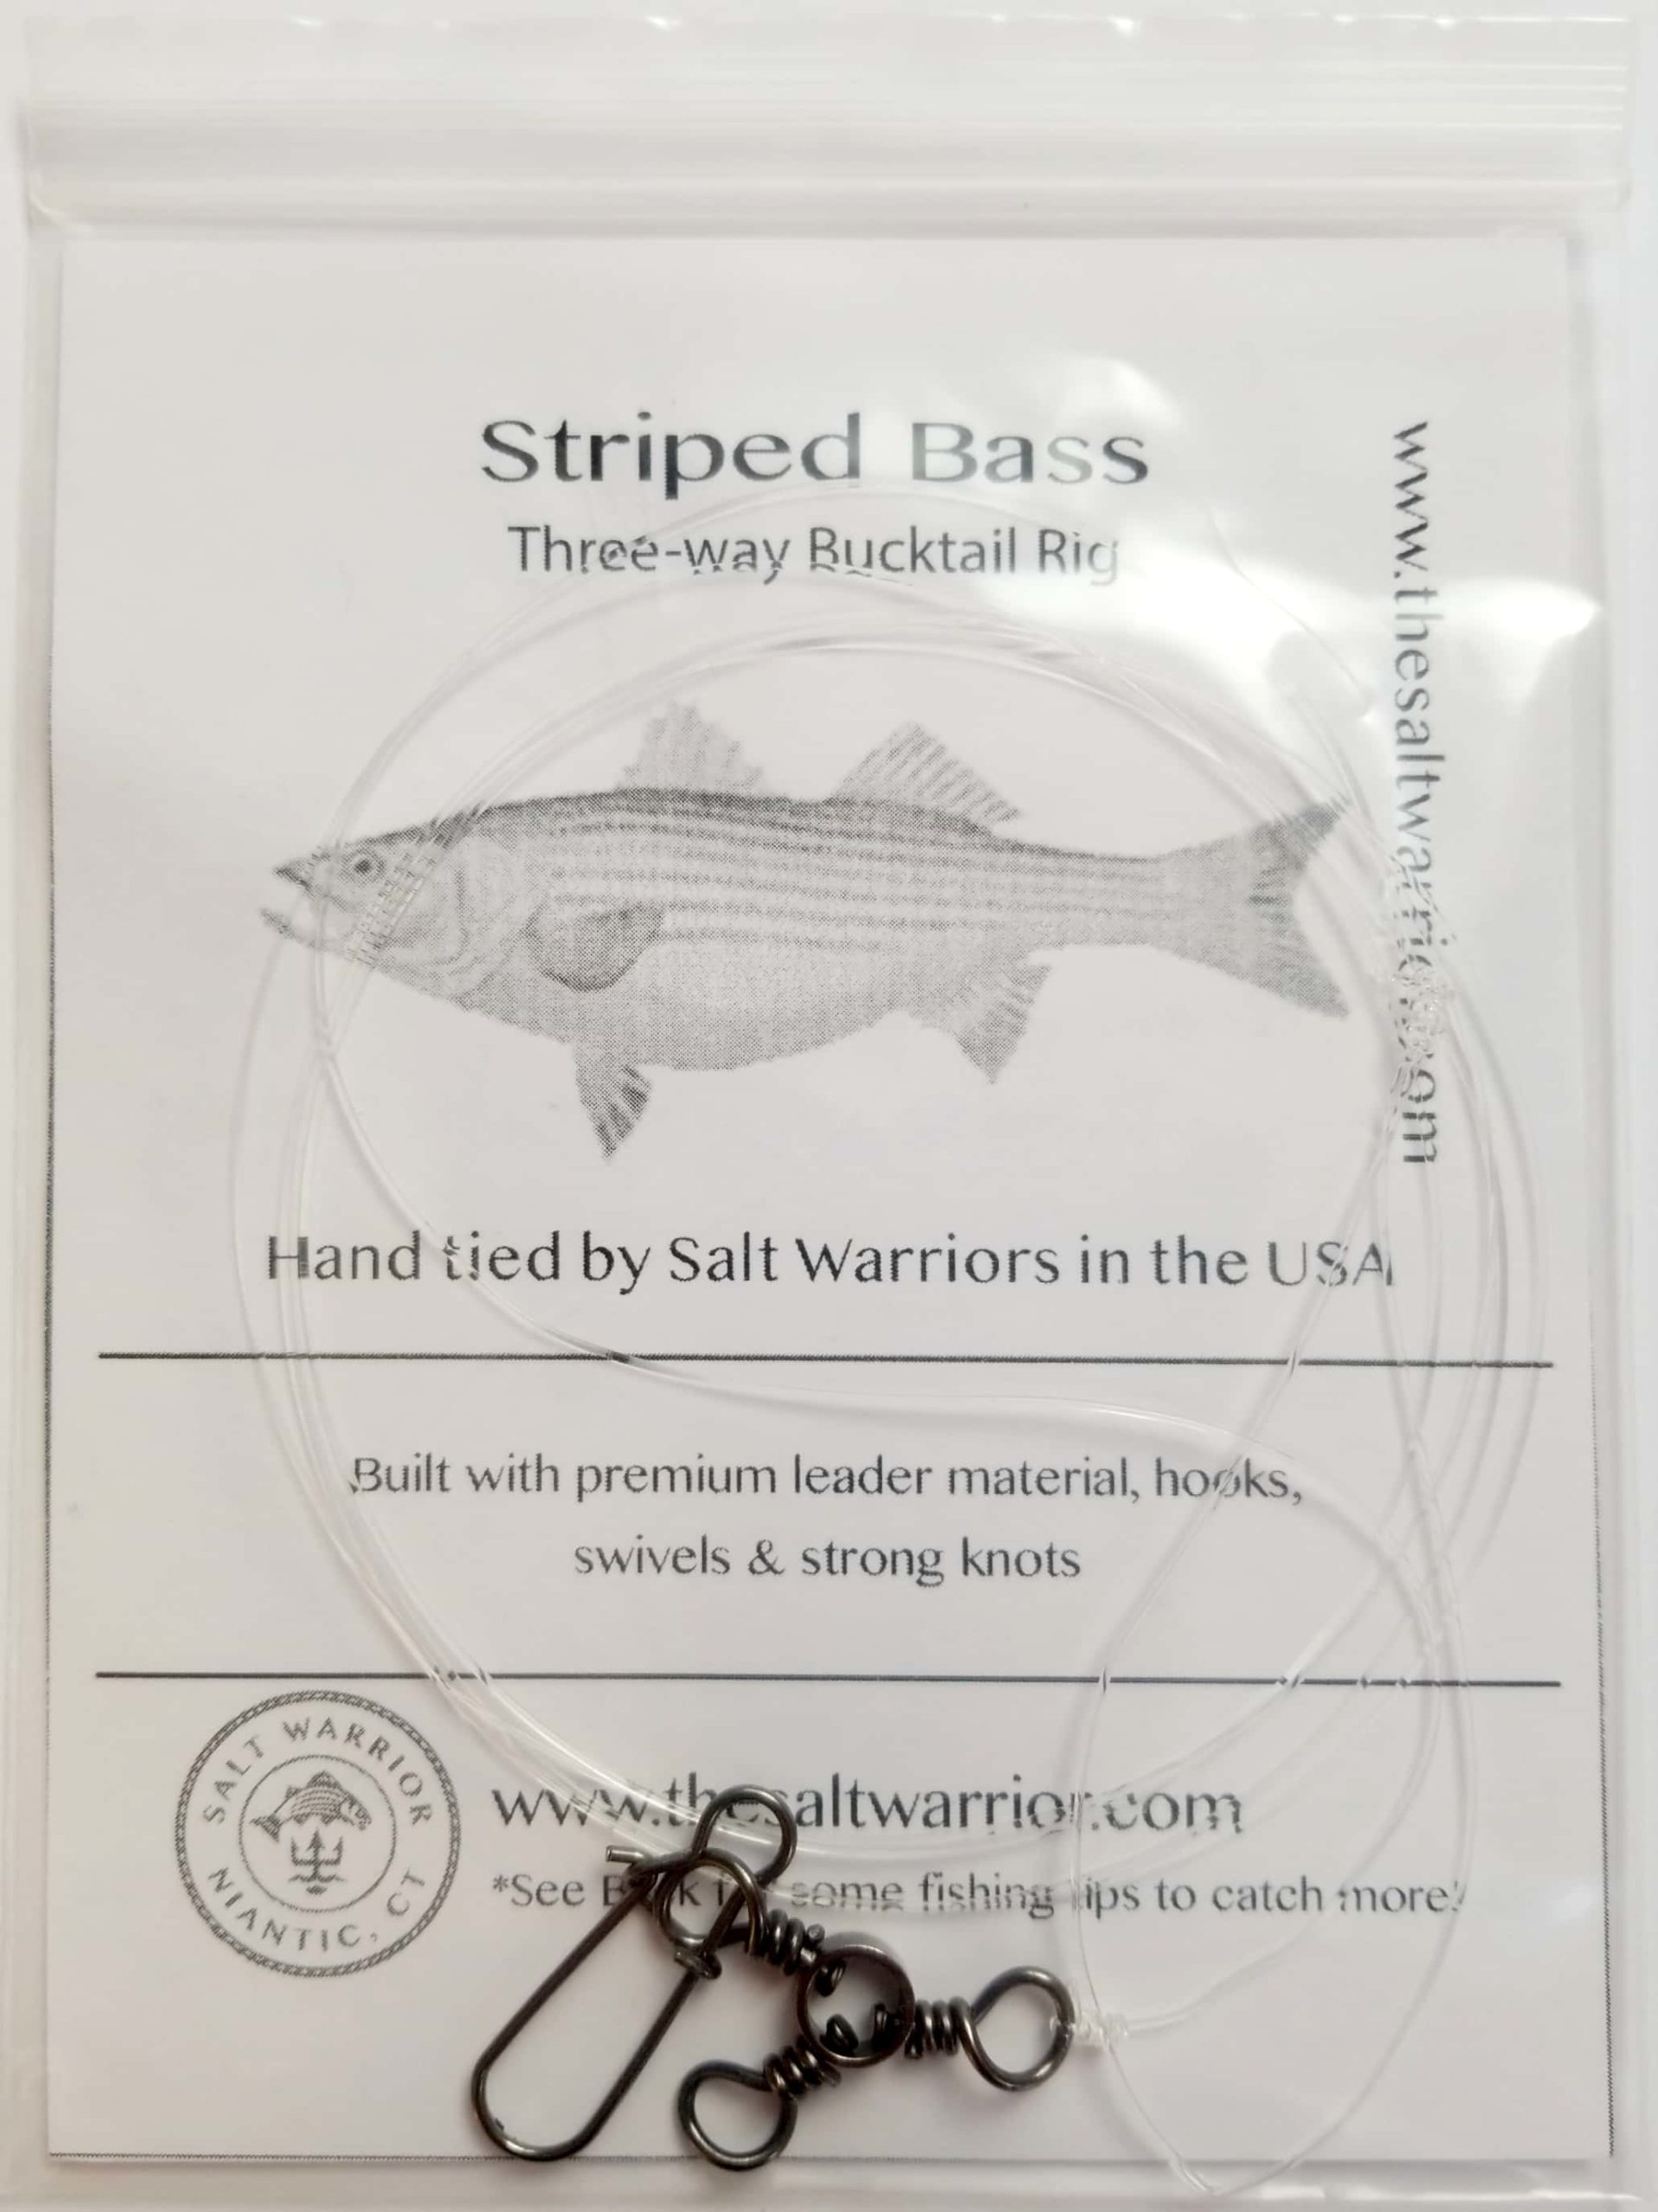 Striped Bass 3-way Bucktail Rig - The Salt Warrior LLC